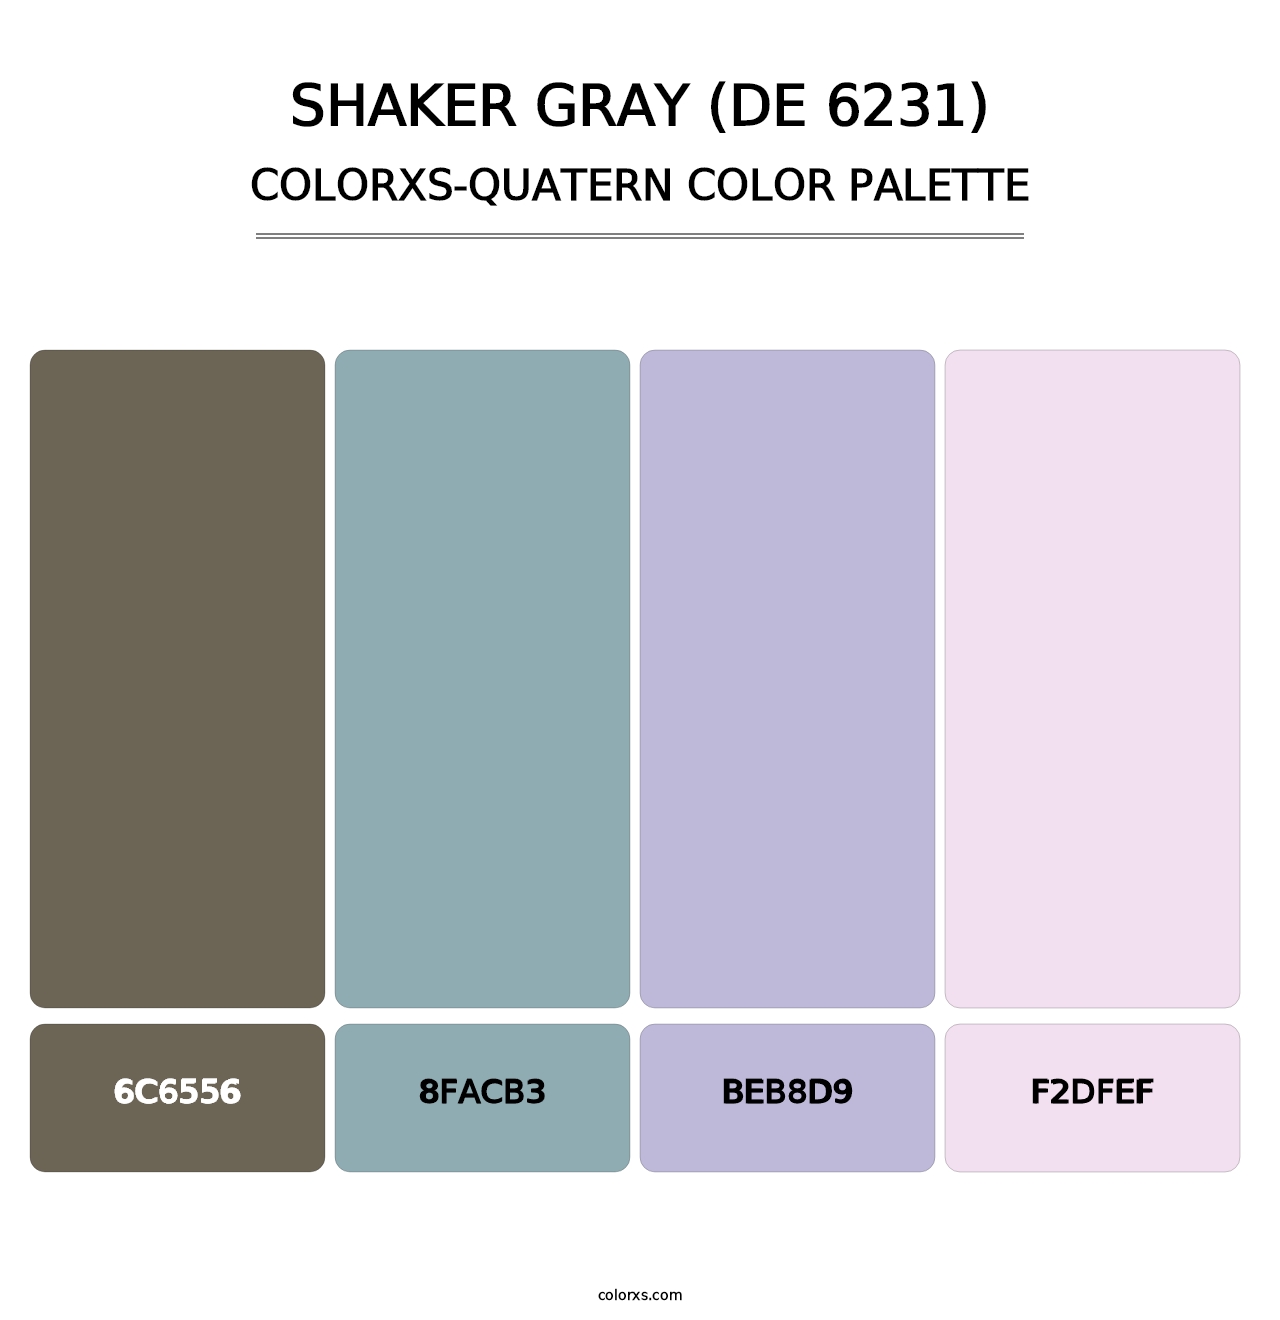 Shaker Gray (DE 6231) - Colorxs Quatern Palette